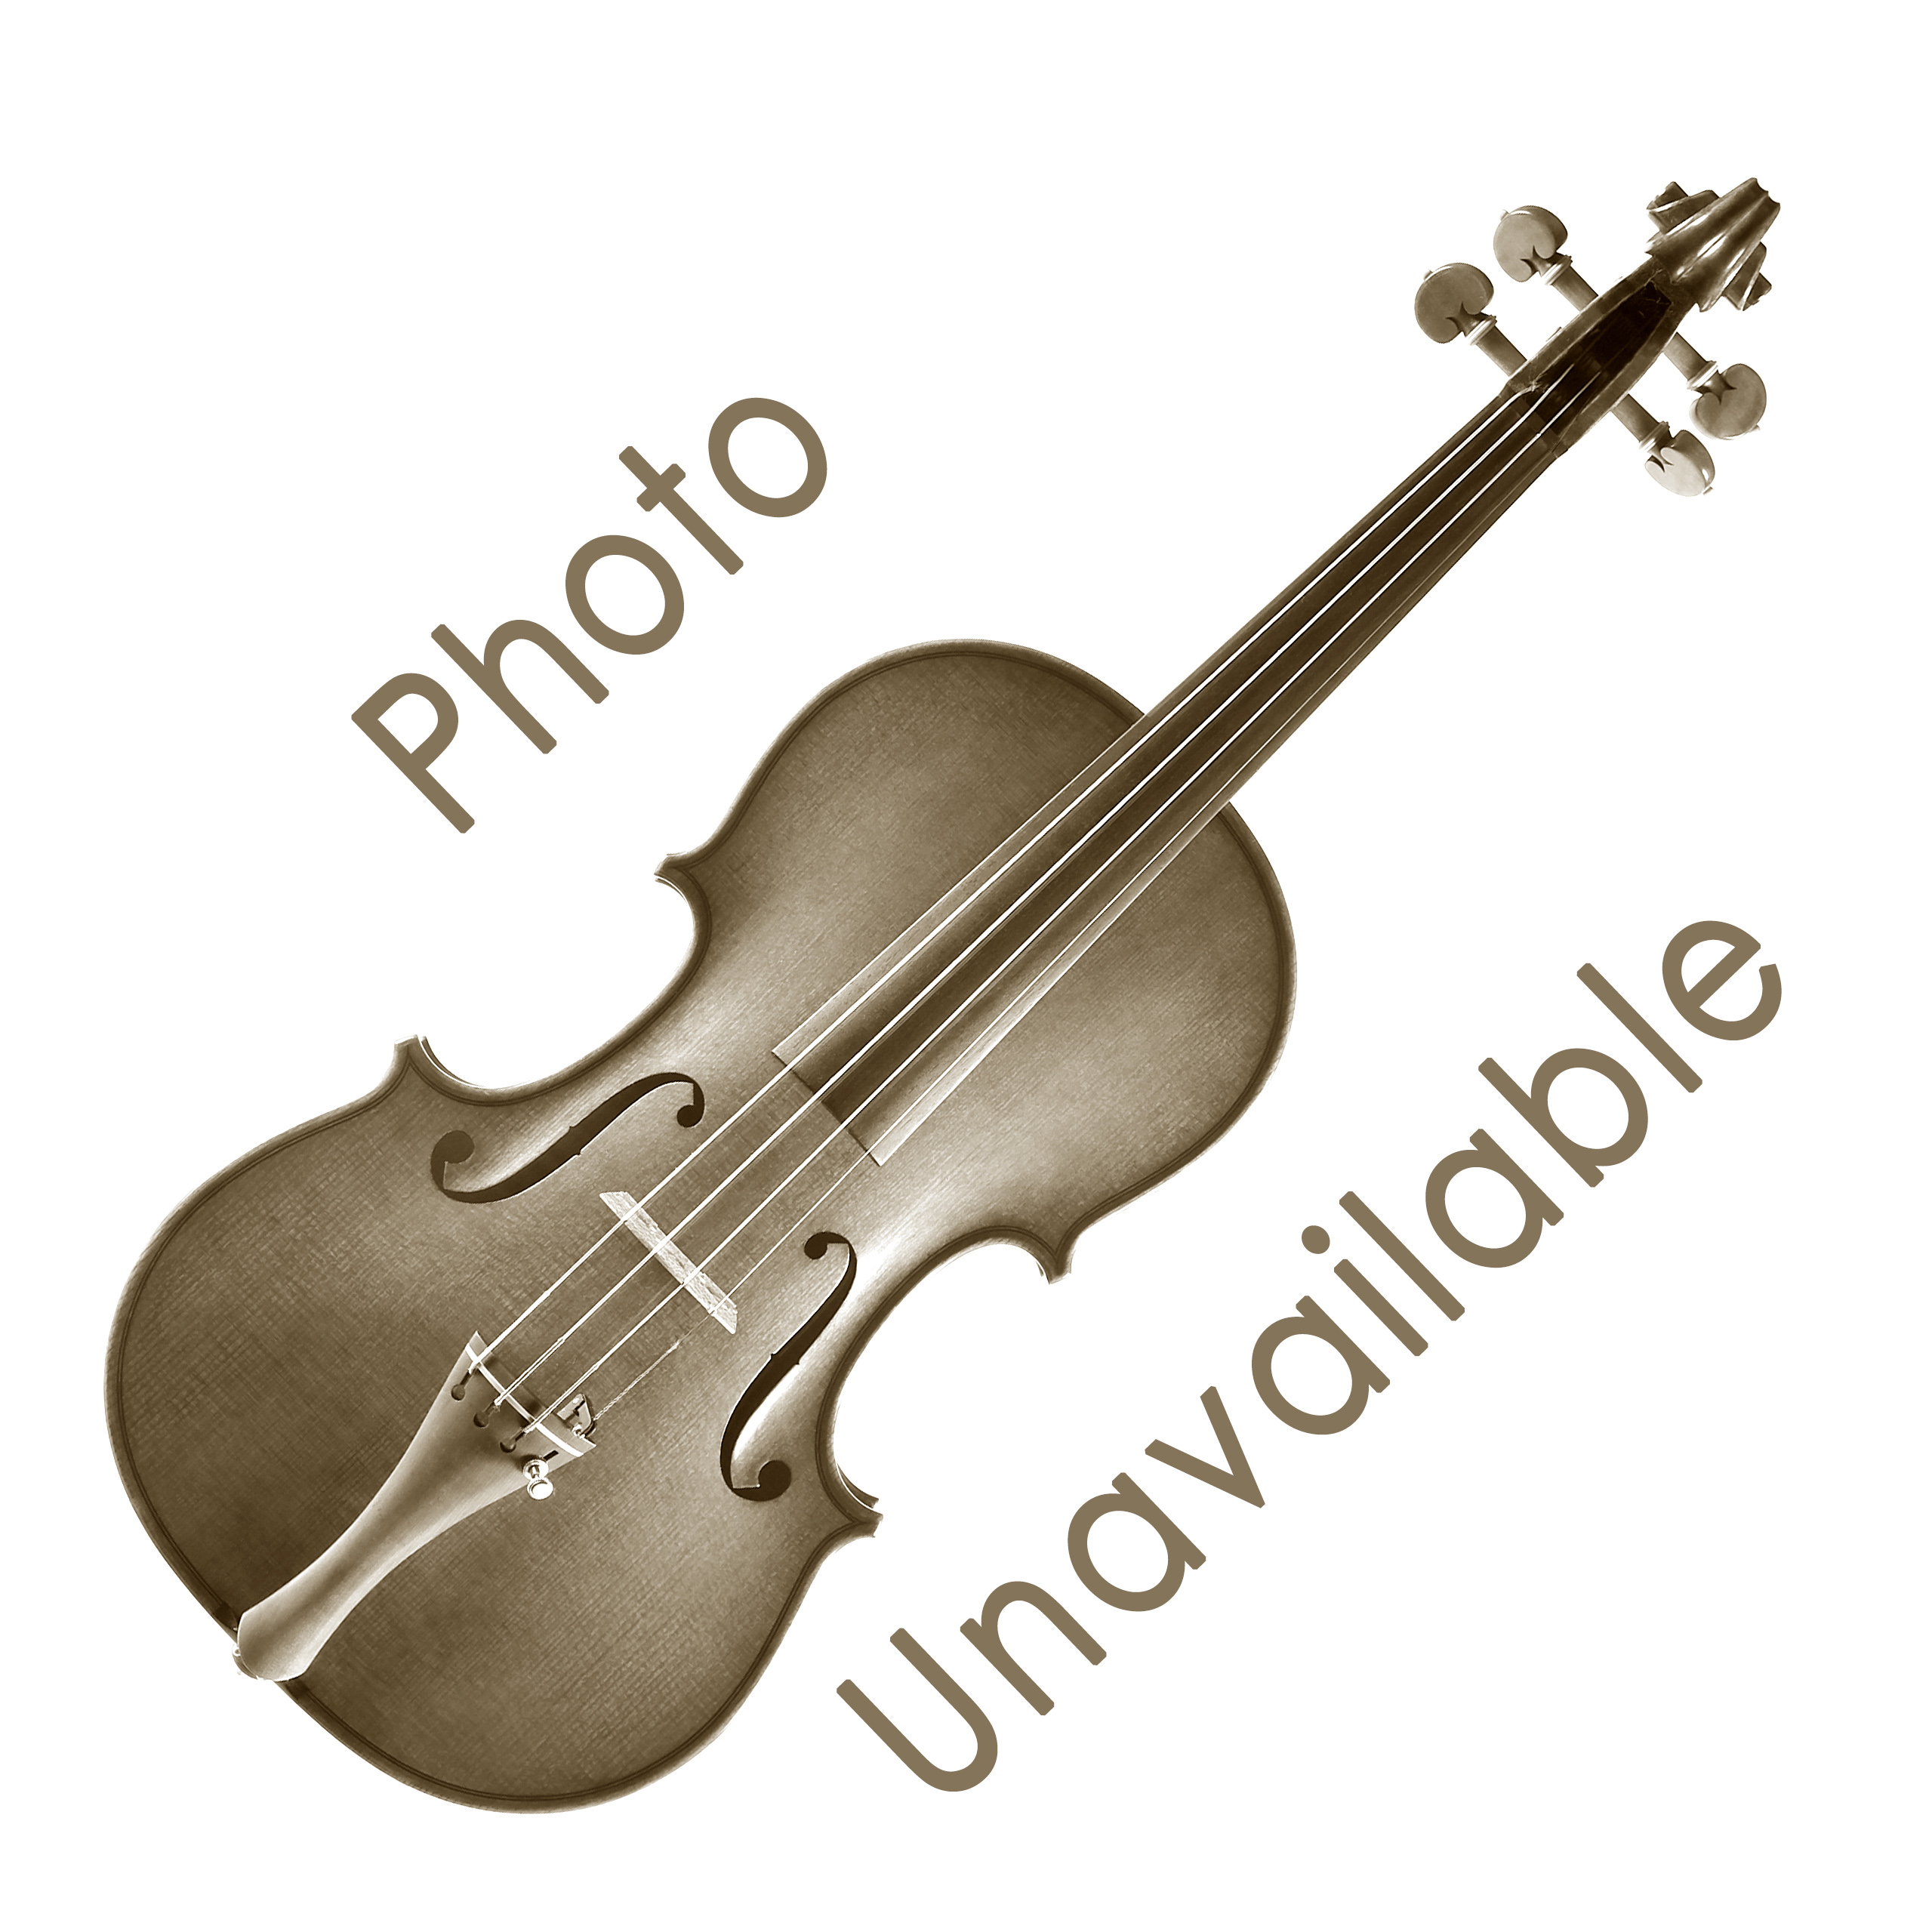 Bon Musica Shoulder Rest for Violin/Viola - Violin 1/4